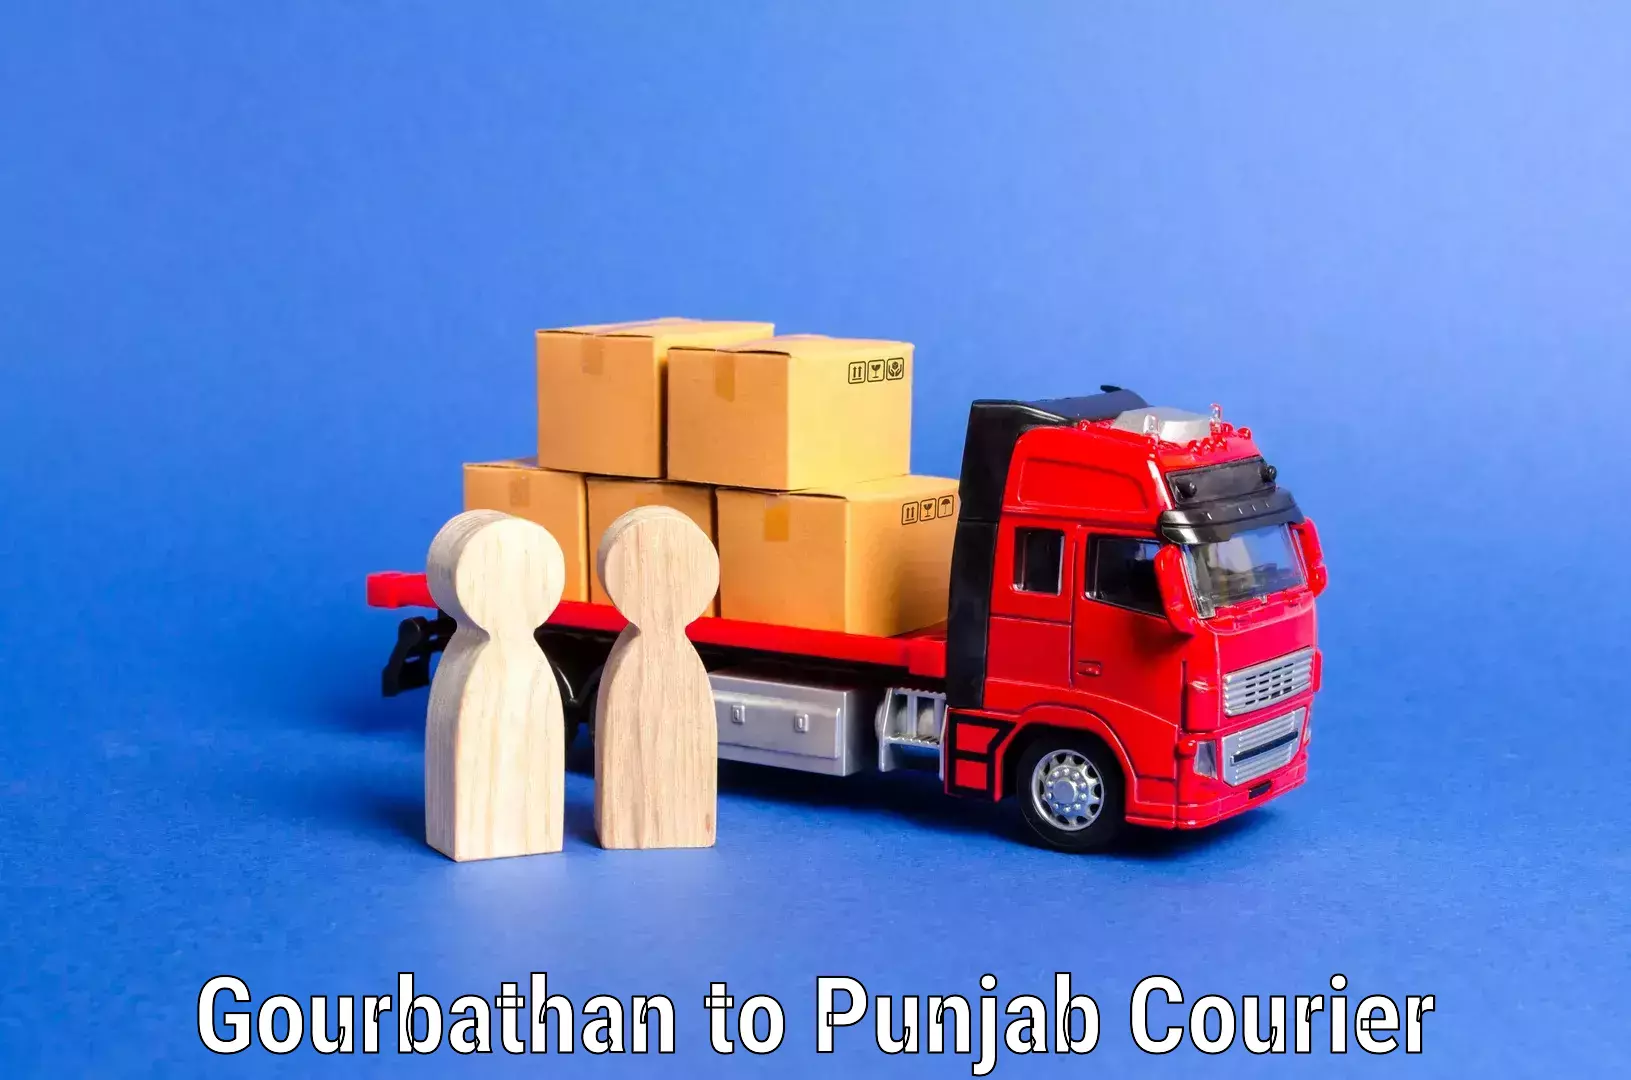 Stress-free furniture moving Gourbathan to Punjab